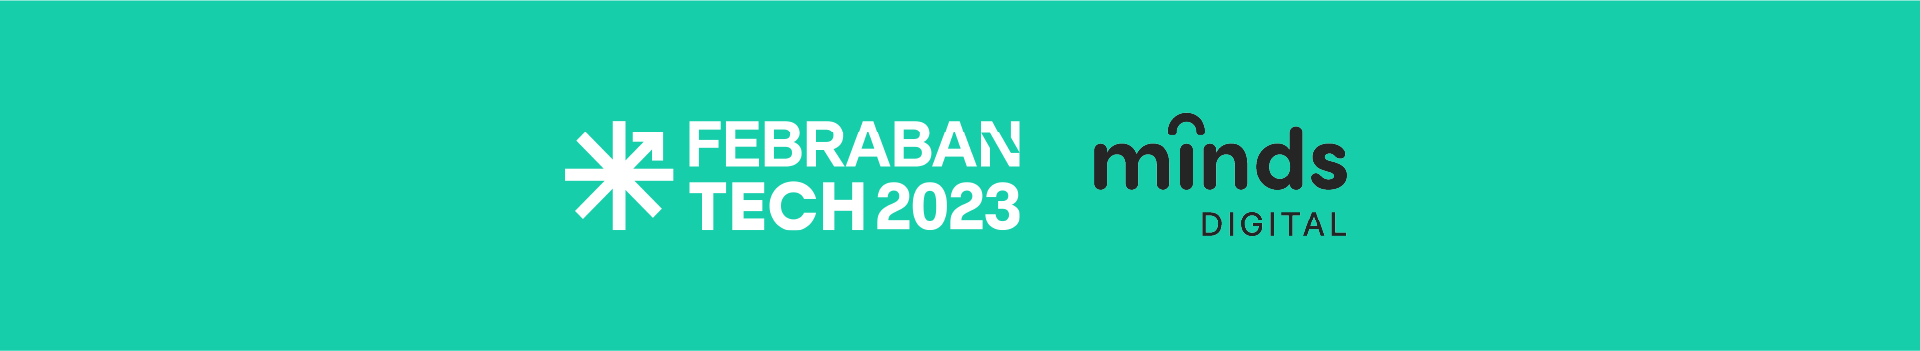 Febraban Tech 2023: Minds Digital no maior evento de tecnologia financeira